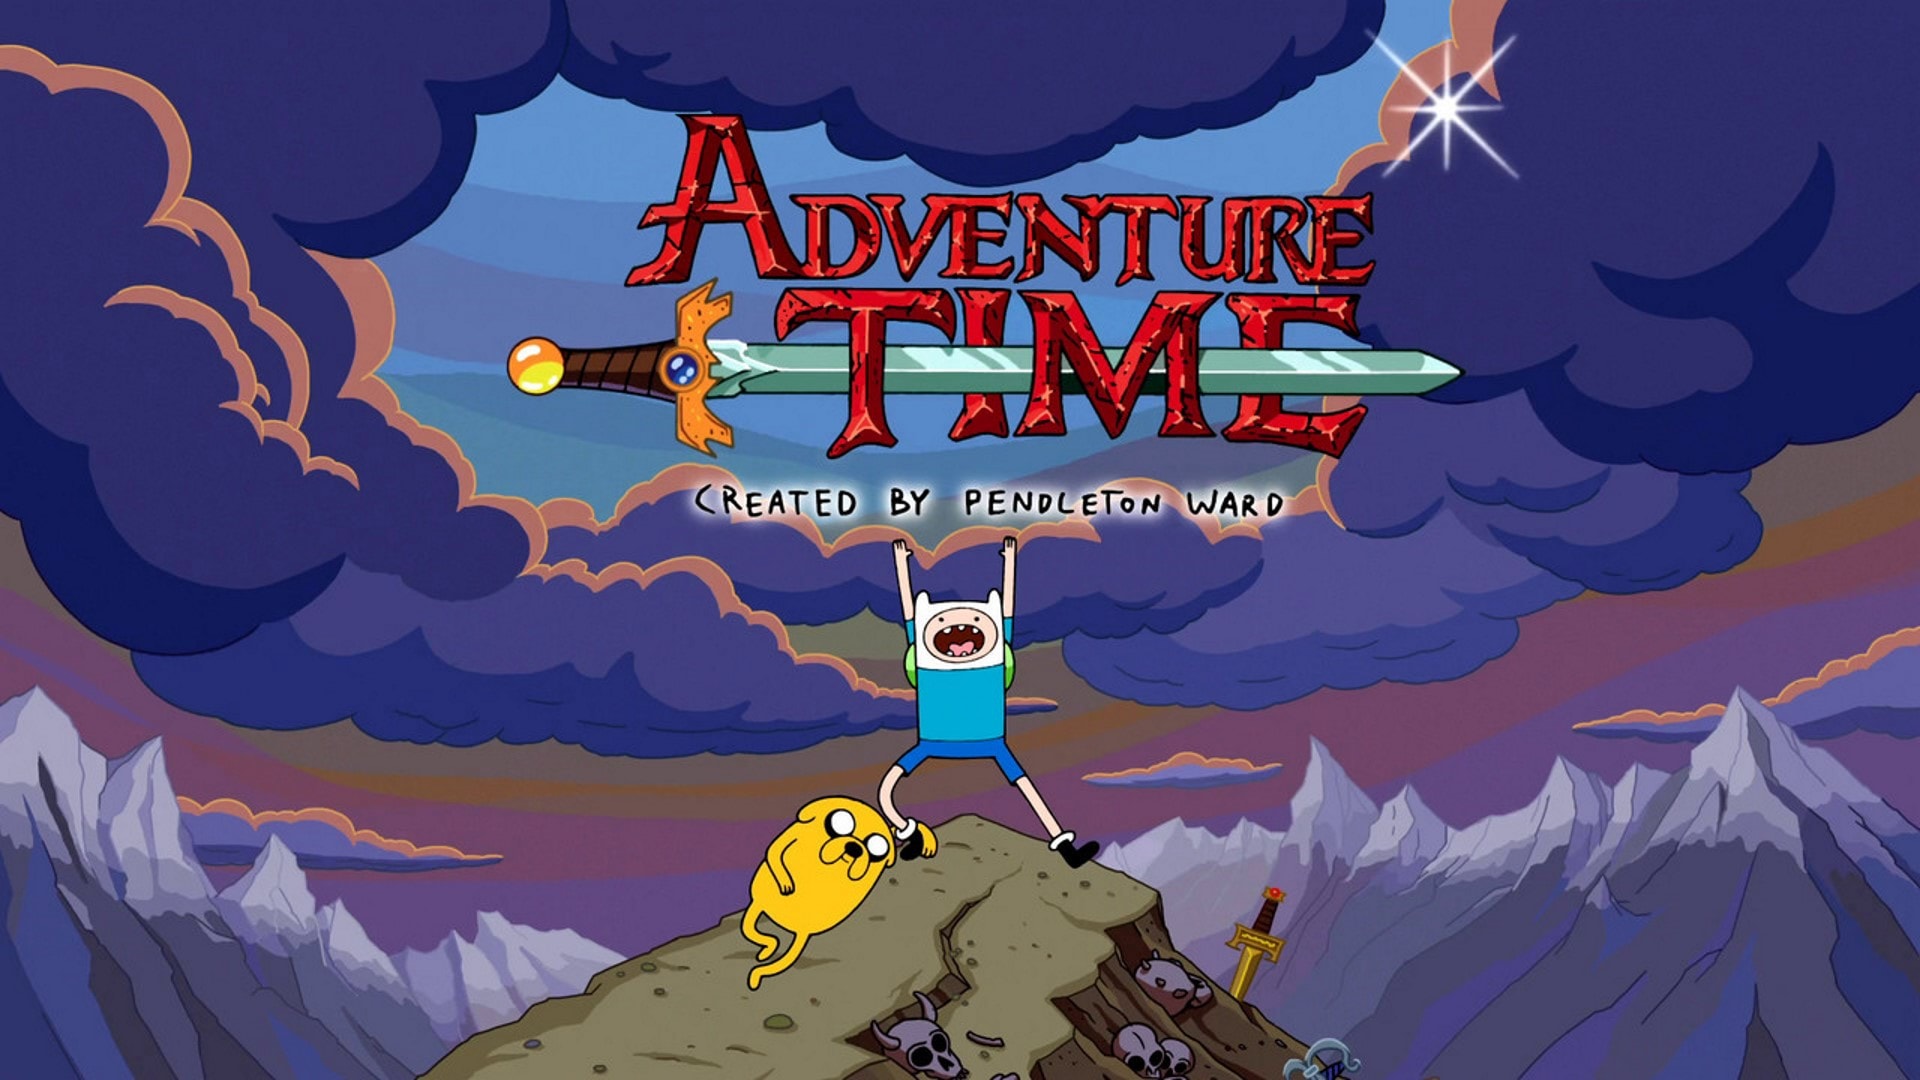 adventure time season 9 episode 1 dailymotion